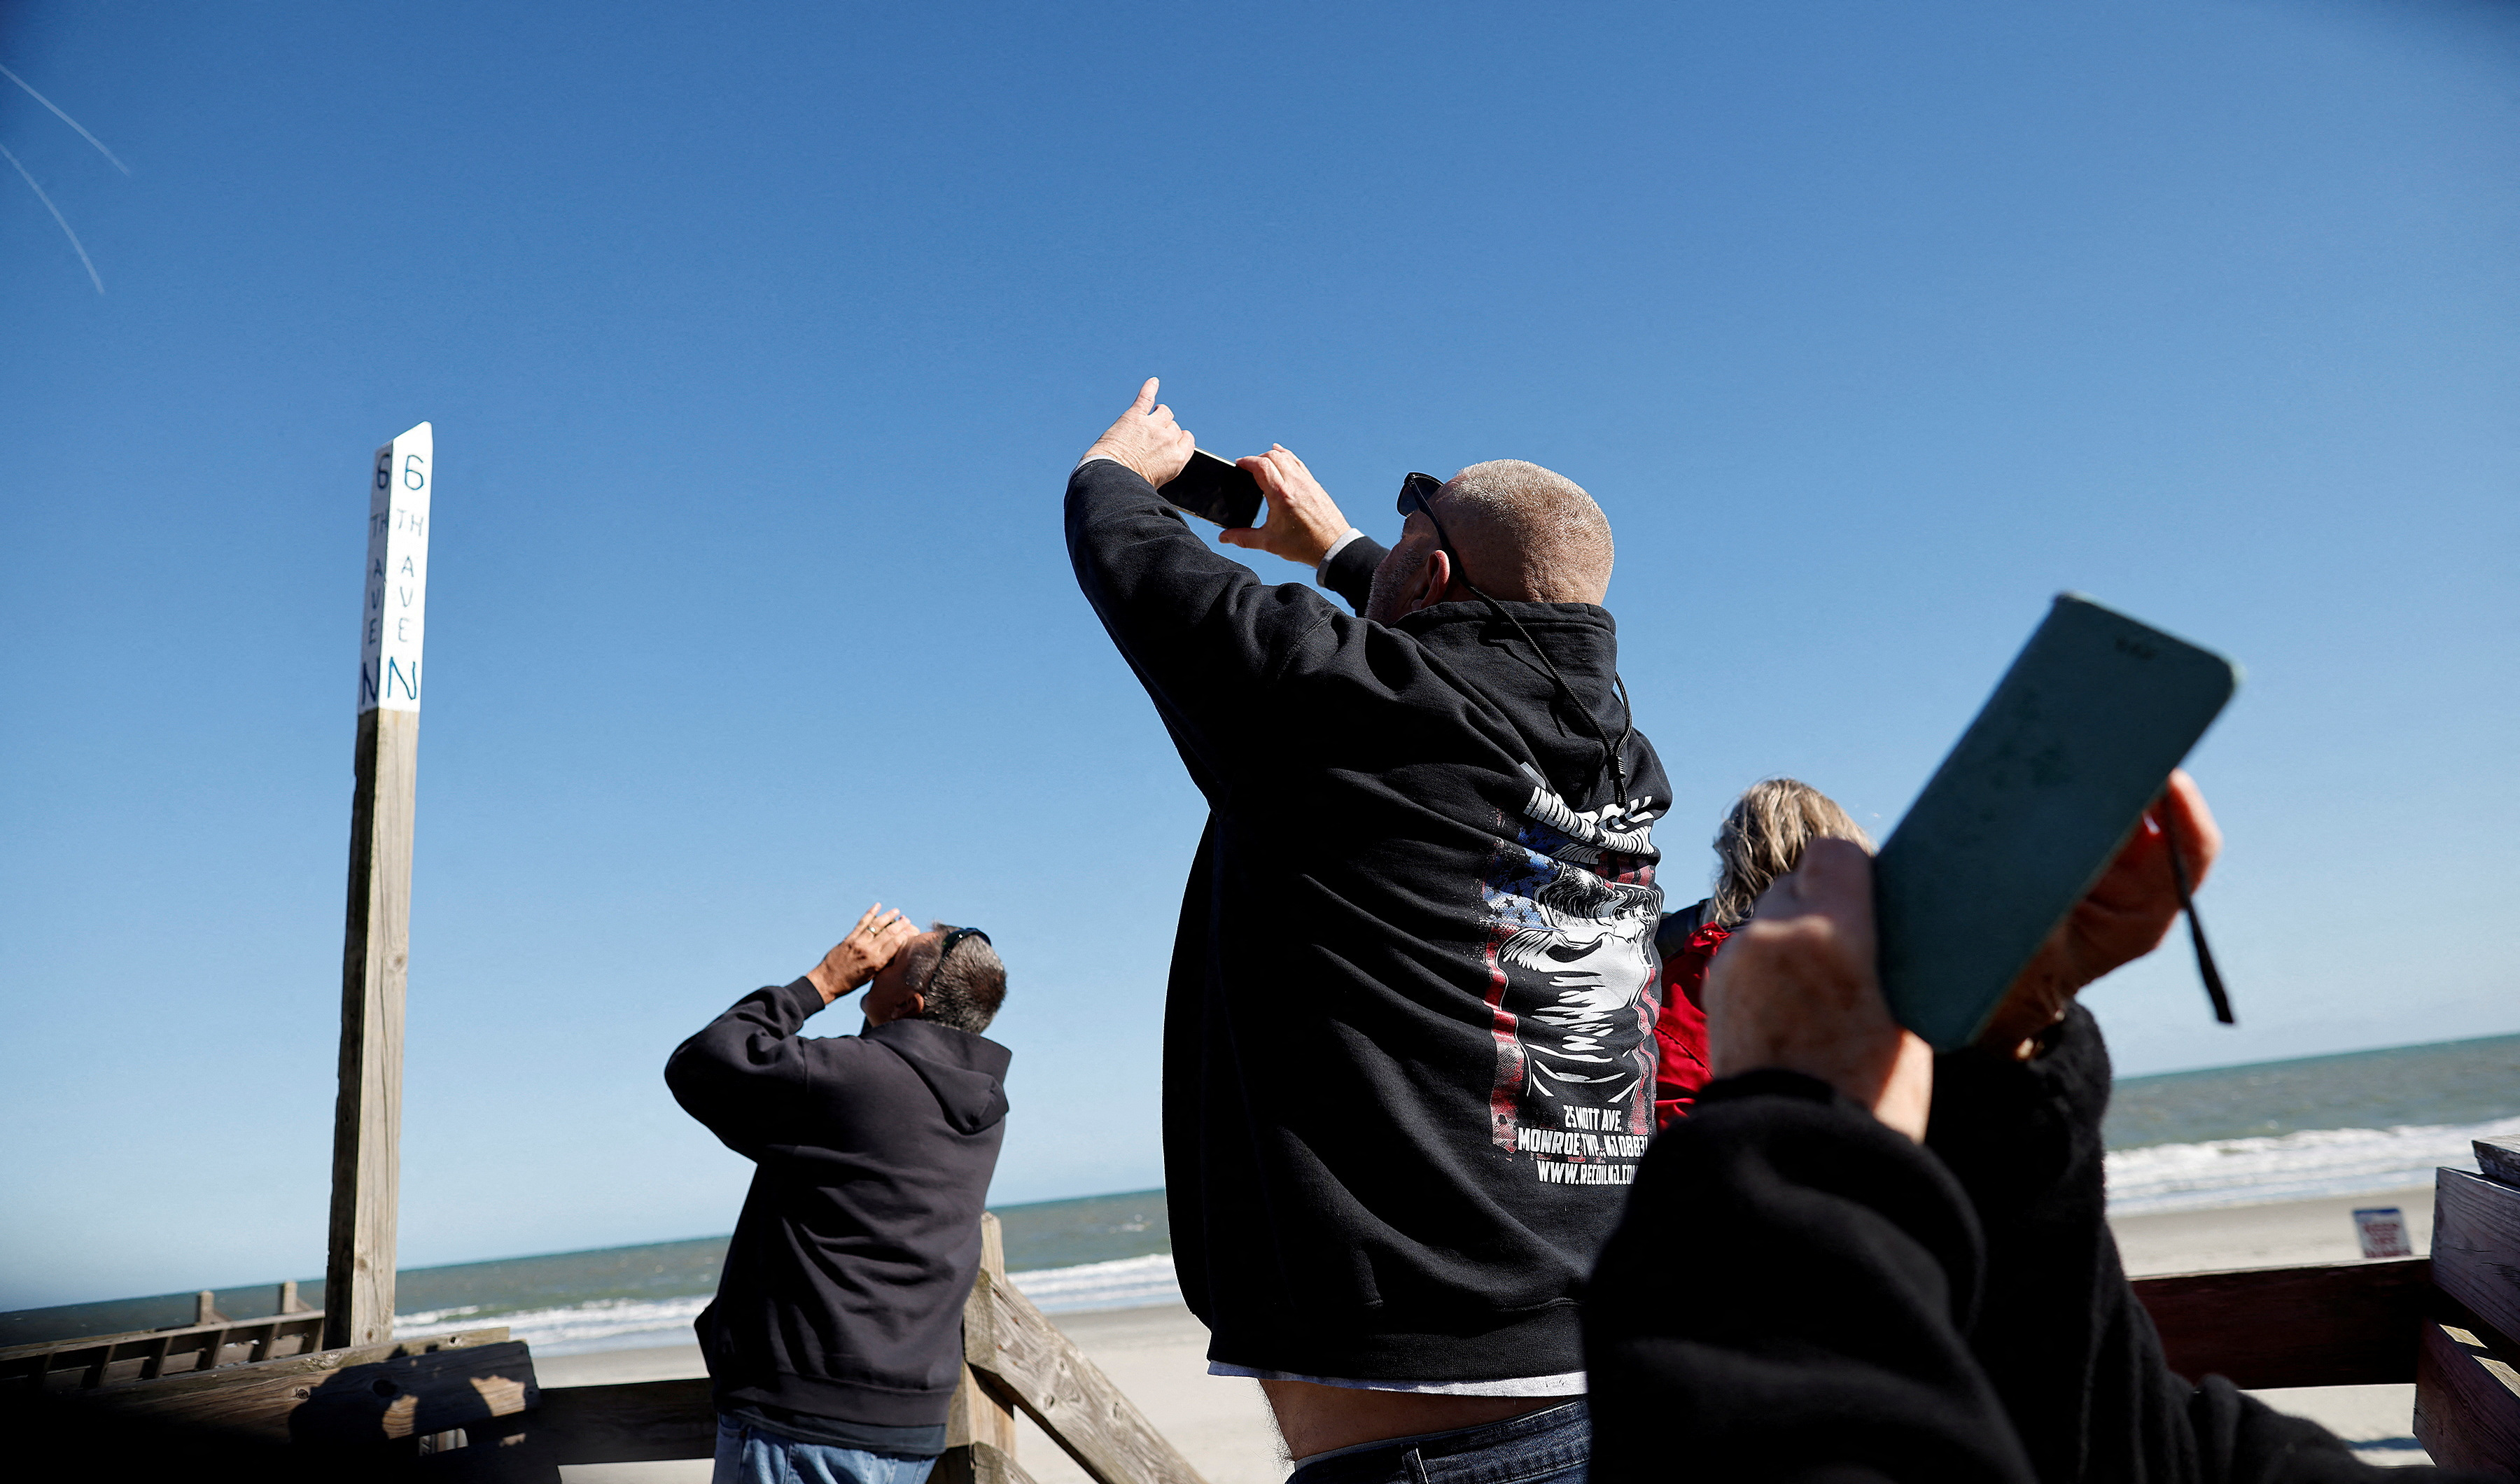 Personas toman fotografías y videos del objeto volador chino en la costa de Carolina del Sur (Reuters)